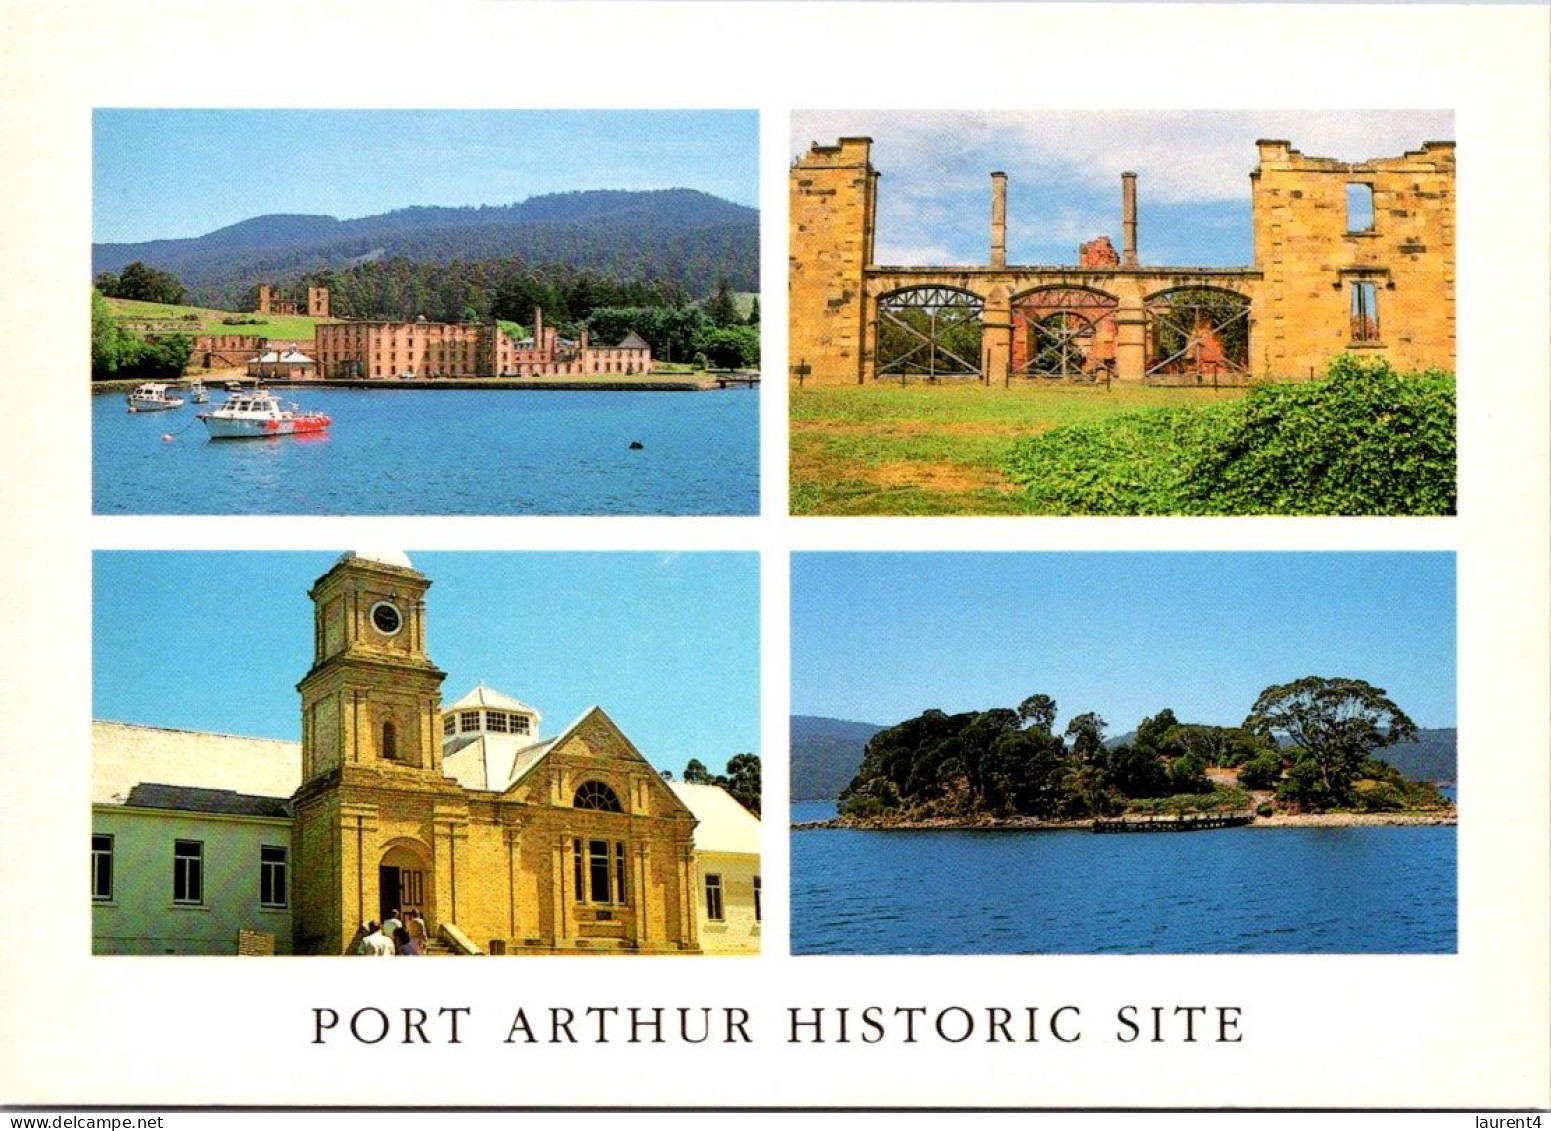 18-9-2023 (1 U 27) Australia - TAS - Historcic Port Arthur - Port Arthur